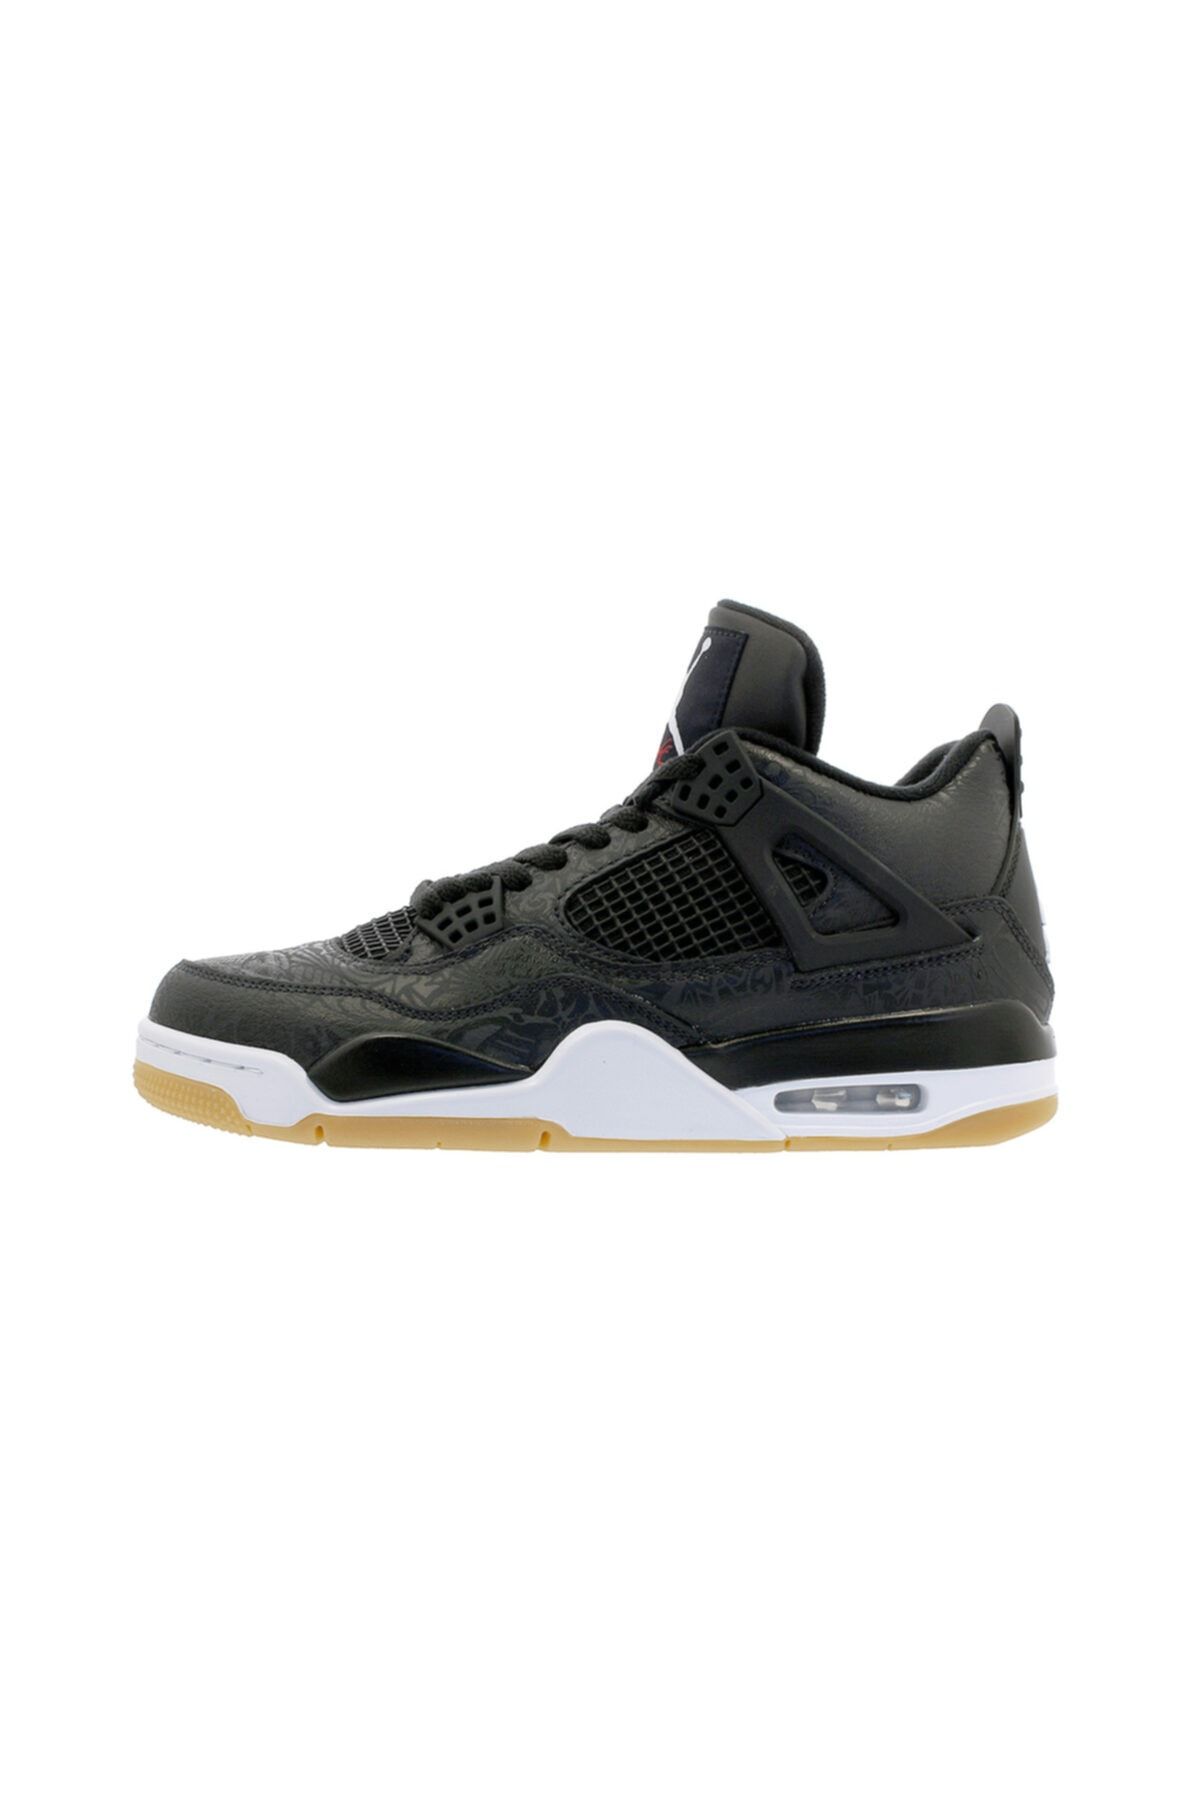 Nike Aır Jordan 4 Retro 136013-999 Basketbol Ayakkabısı